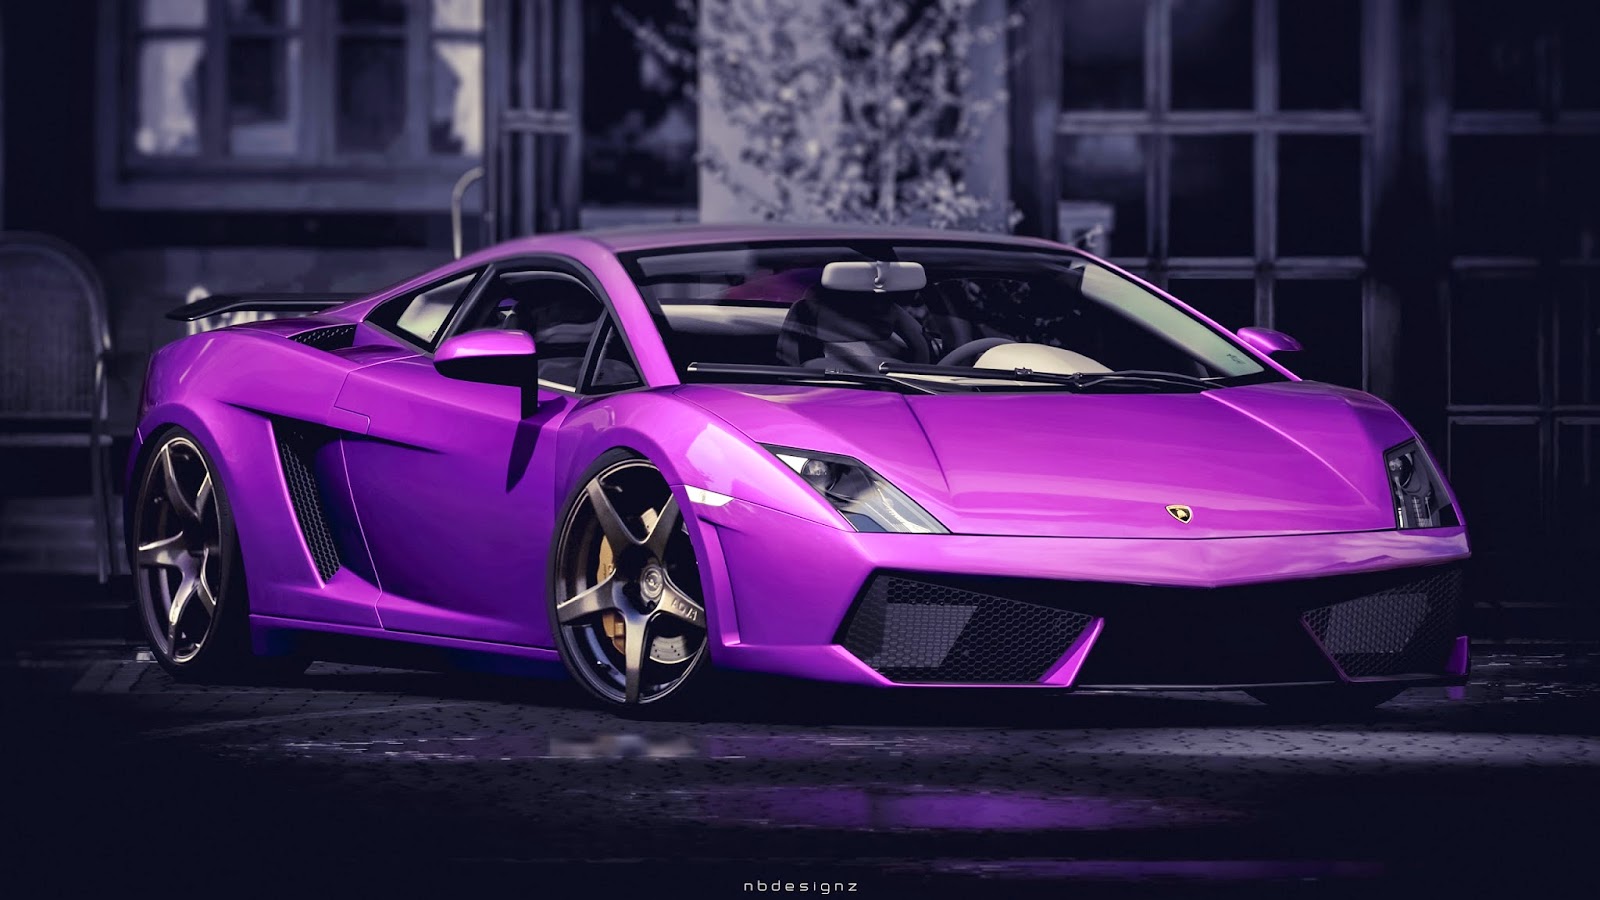 Purple Lamborghini Gallardo HD Wallpaper Covers Heat